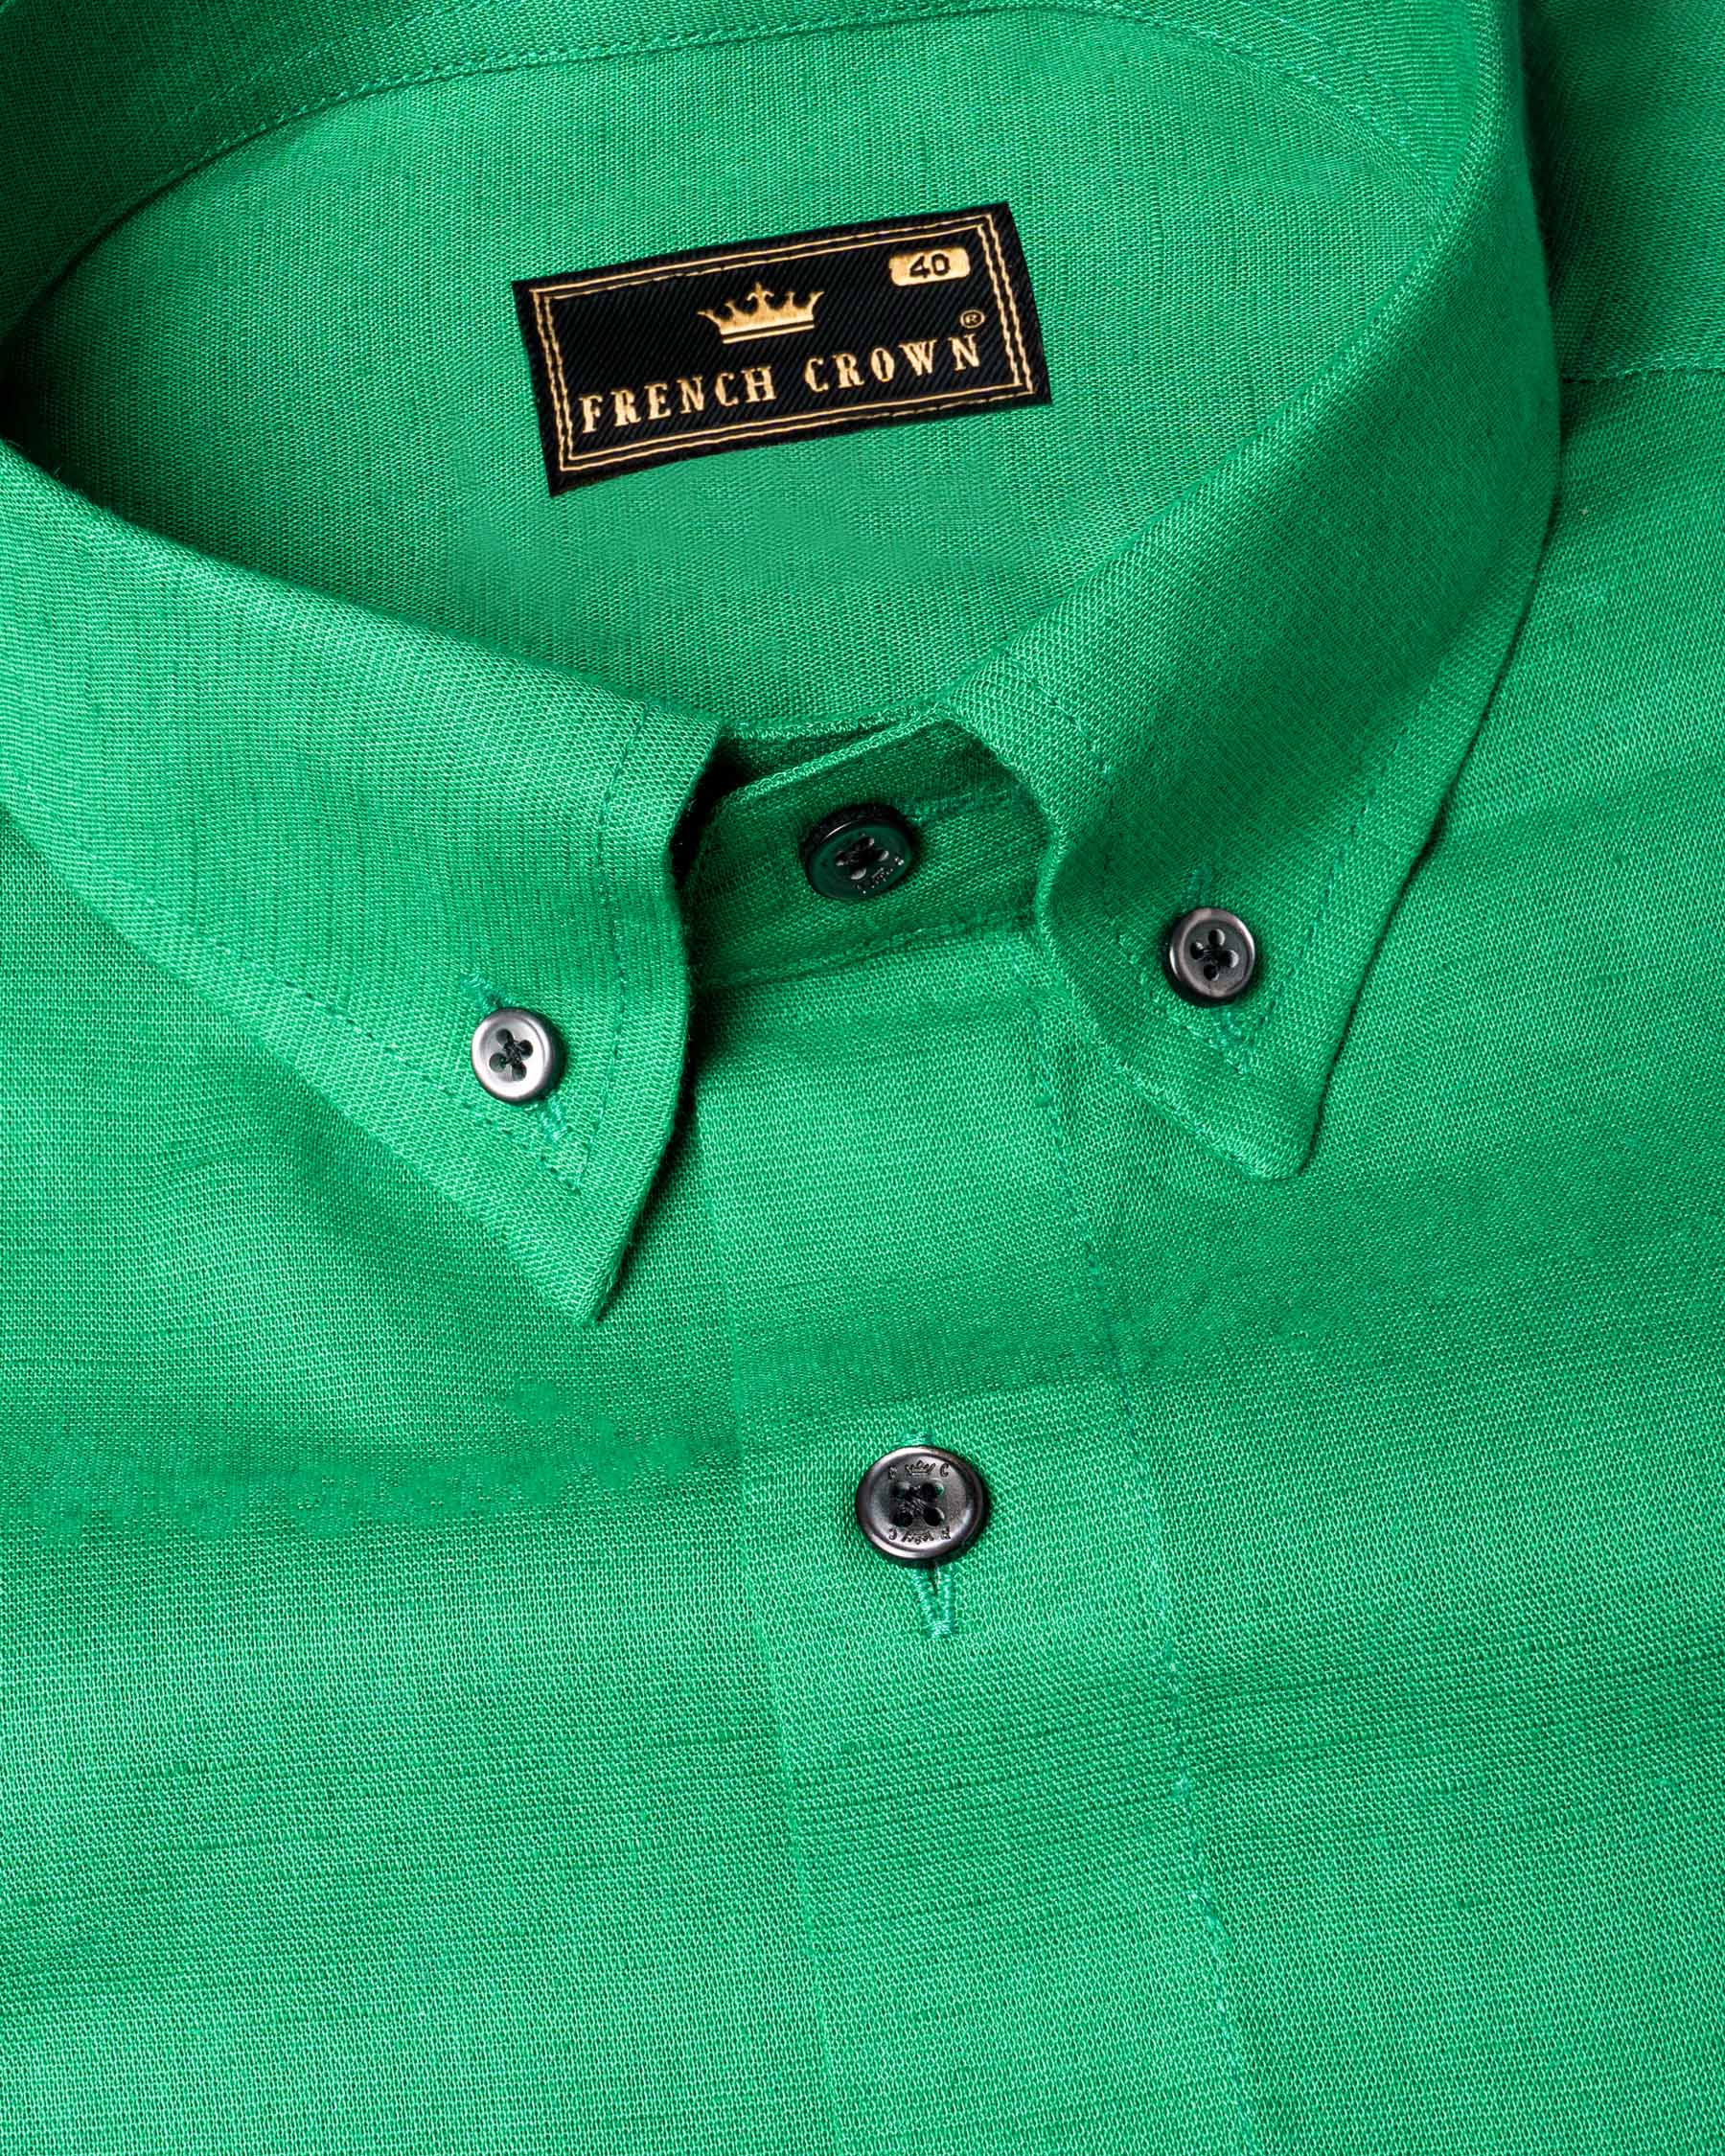 Jade Green Luxurious Linen Shirt 6160-BD-BLK-38, 6160-BD-BLK-H-38, 6160-BD-BLK-39, 6160-BD-BLK-H-39, 6160-BD-BLK-40, 6160-BD-BLK-H-40, 6160-BD-BLK-42, 6160-BD-BLK-H-42, 6160-BD-BLK-44, 6160-BD-BLK-H-44, 6160-BD-BLK-46, 6160-BD-BLK-H-46, 6160-BD-BLK-48, 6160-BD-BLK-H-48, 6160-BD-BLK-50, 6160-BD-BLK-H-50, 6160-BD-BLK-52, 6160-BD-BLK-H-52